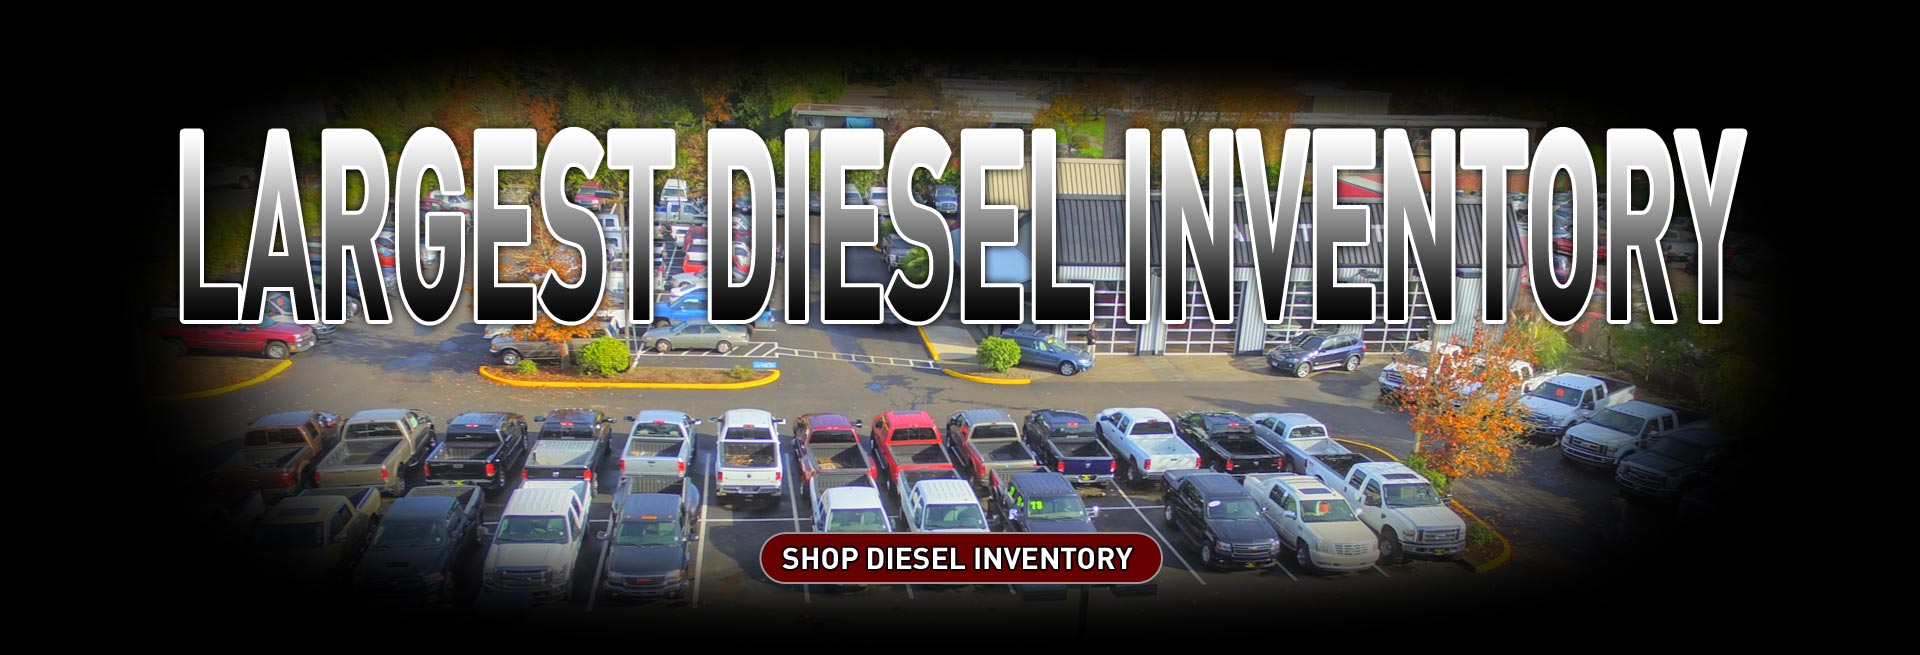  2017-Largest-Diesel-Inventory.jpg